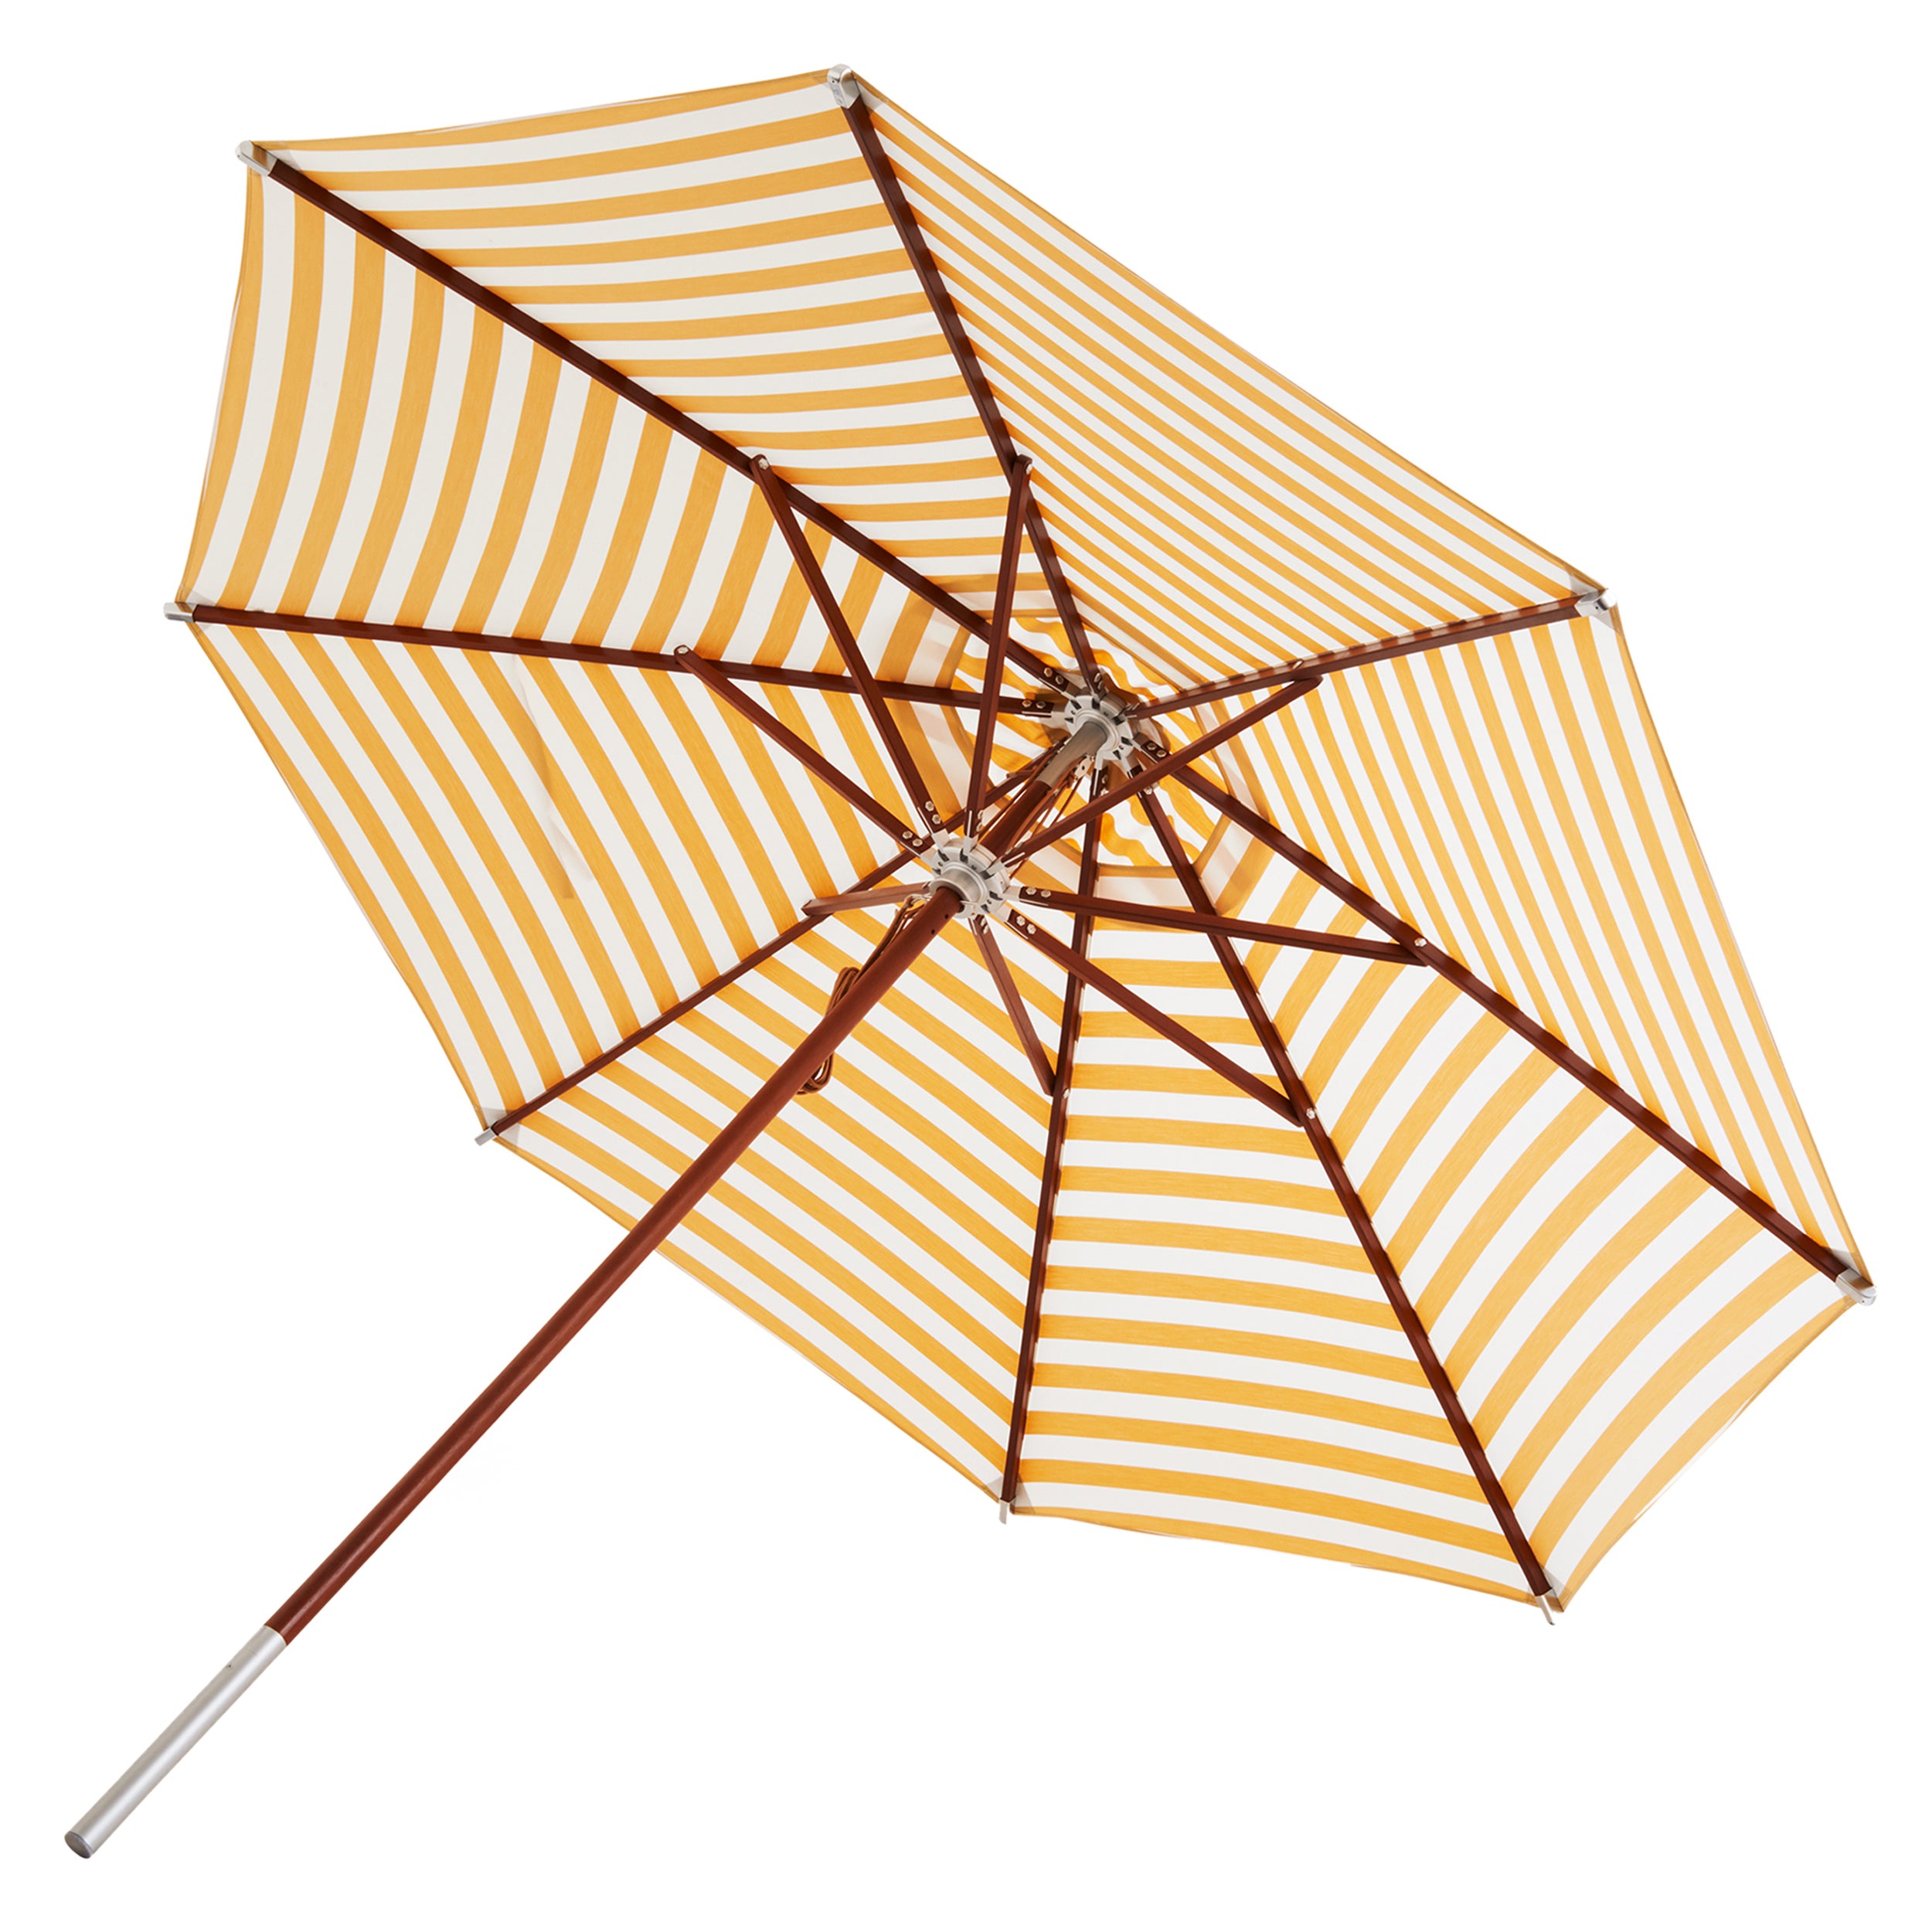 Atlantis Umbrella: Striped + Golden Yellow Stripes + Without Base